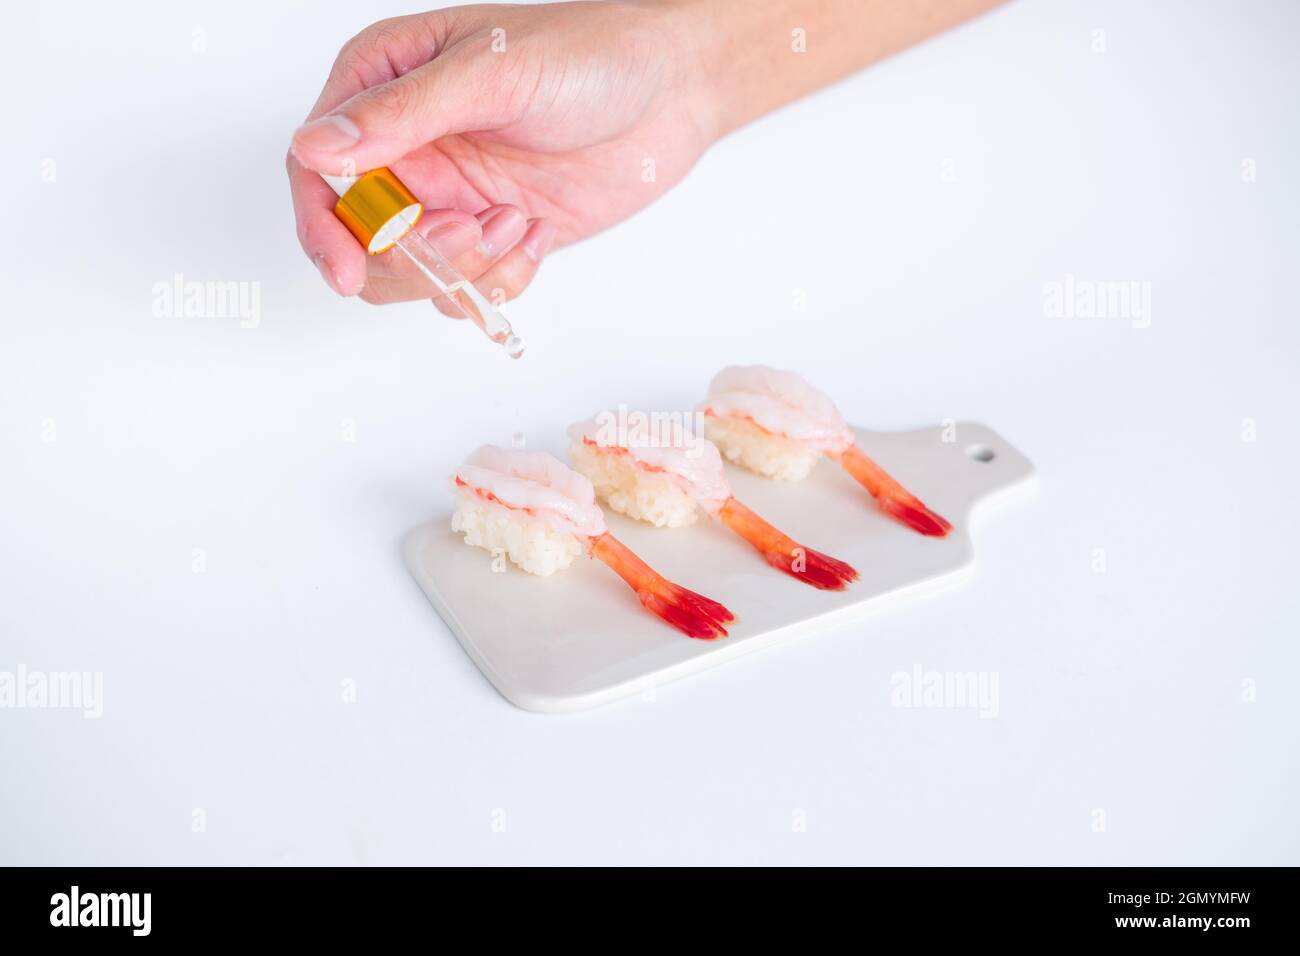 Rohes Shrimp-Garnelen-Sushi im japanischen Restaurant. Sushi - ama Ebi Nigiri auf weißem Brett auf weißem Hintergrund. Cook tropft die Sauce. Hochwertige Fotos Stockfoto